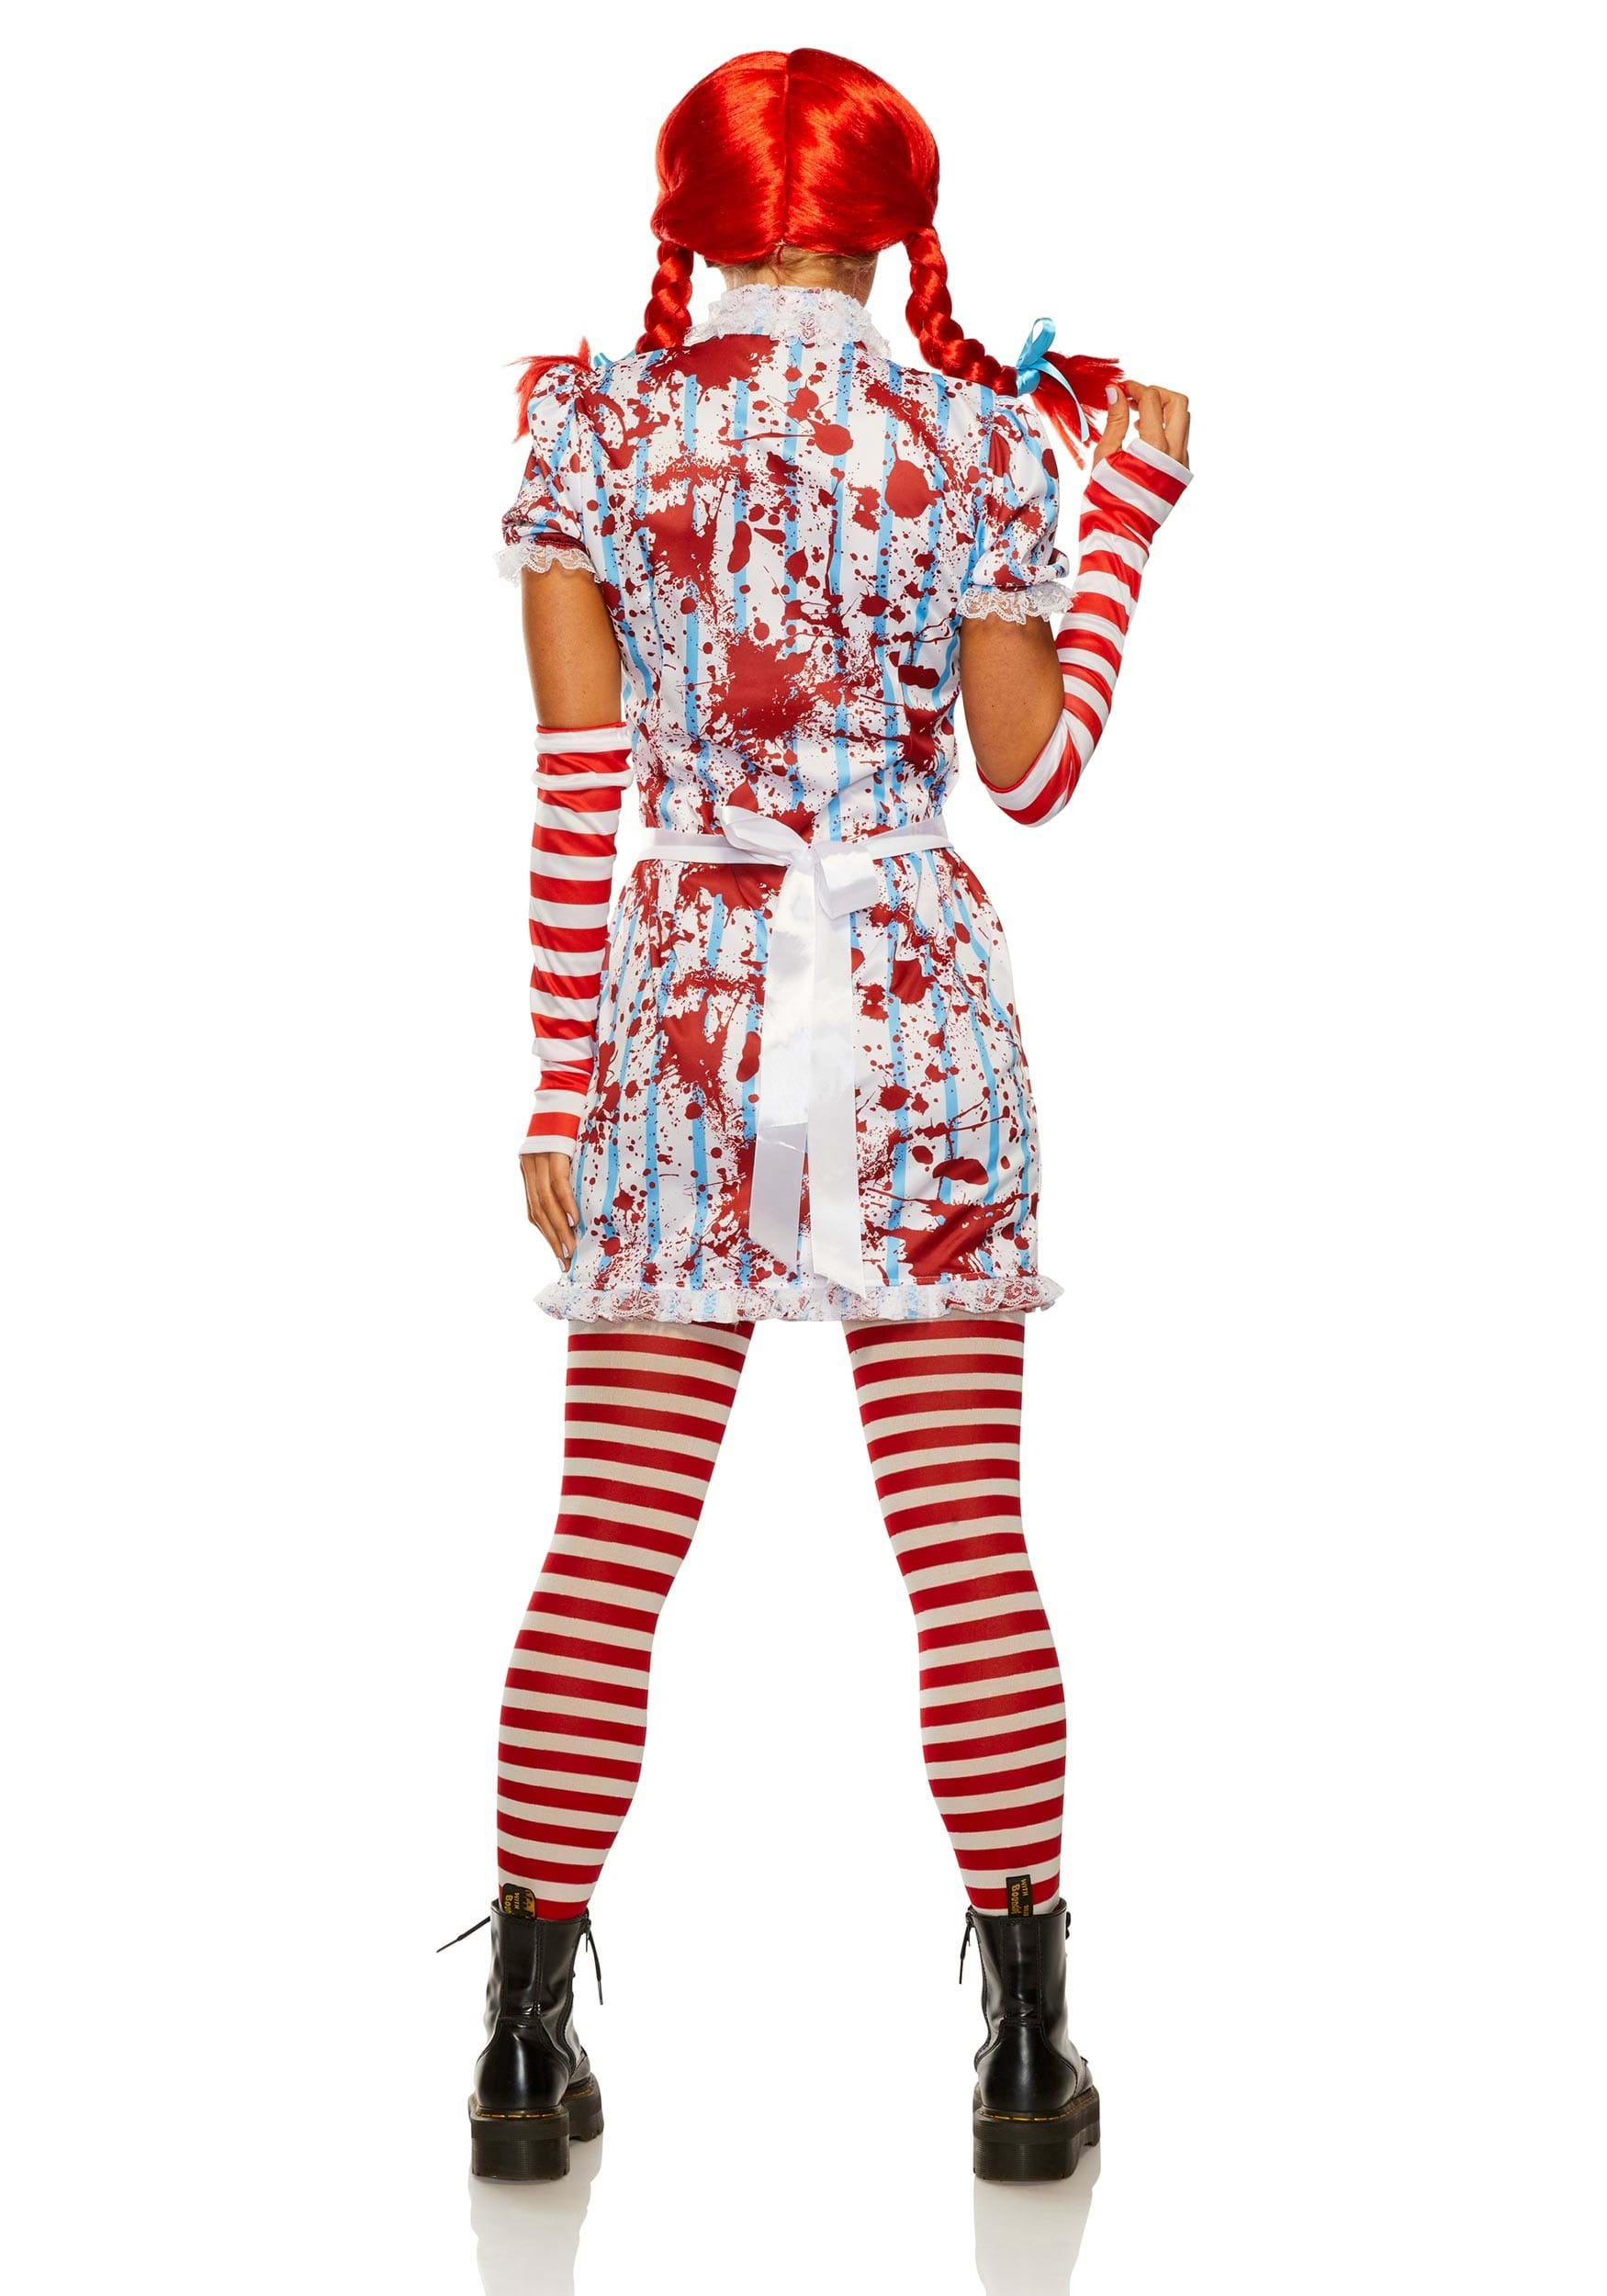 Evil Fast Food Girl Costume For Women